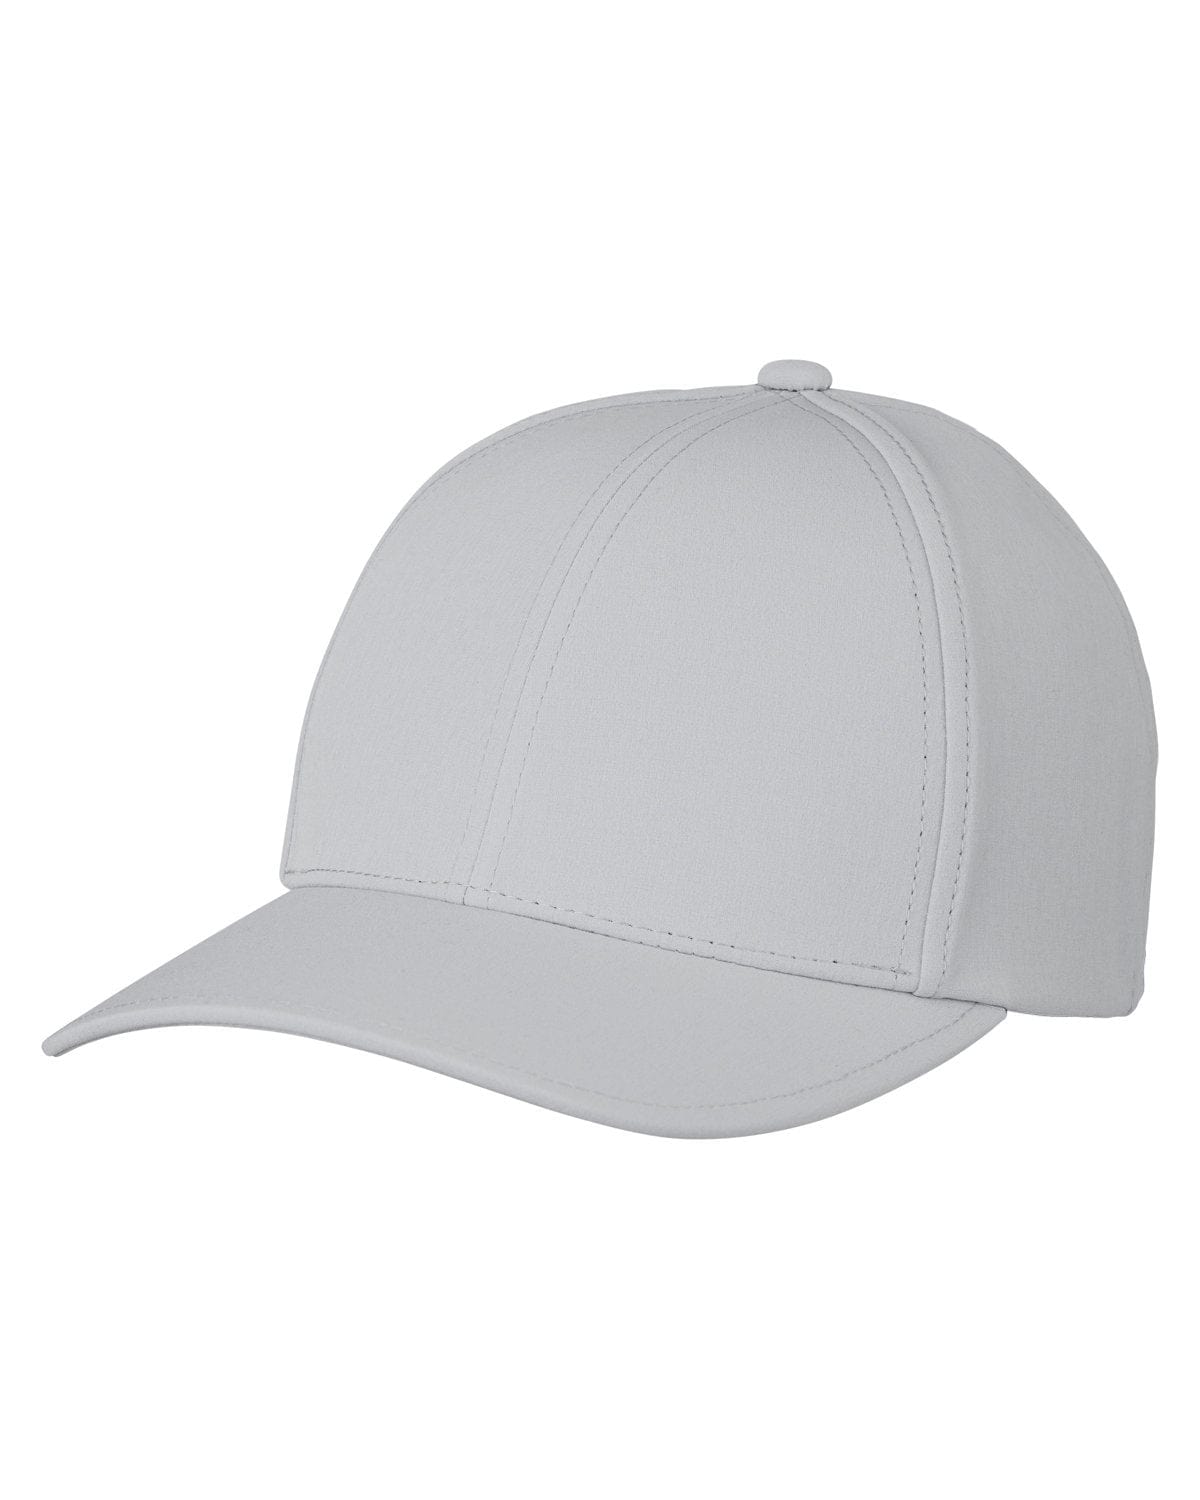 Swannies Golf Headwear One Size / Stone Swannies Golf - Men's Delta Hat